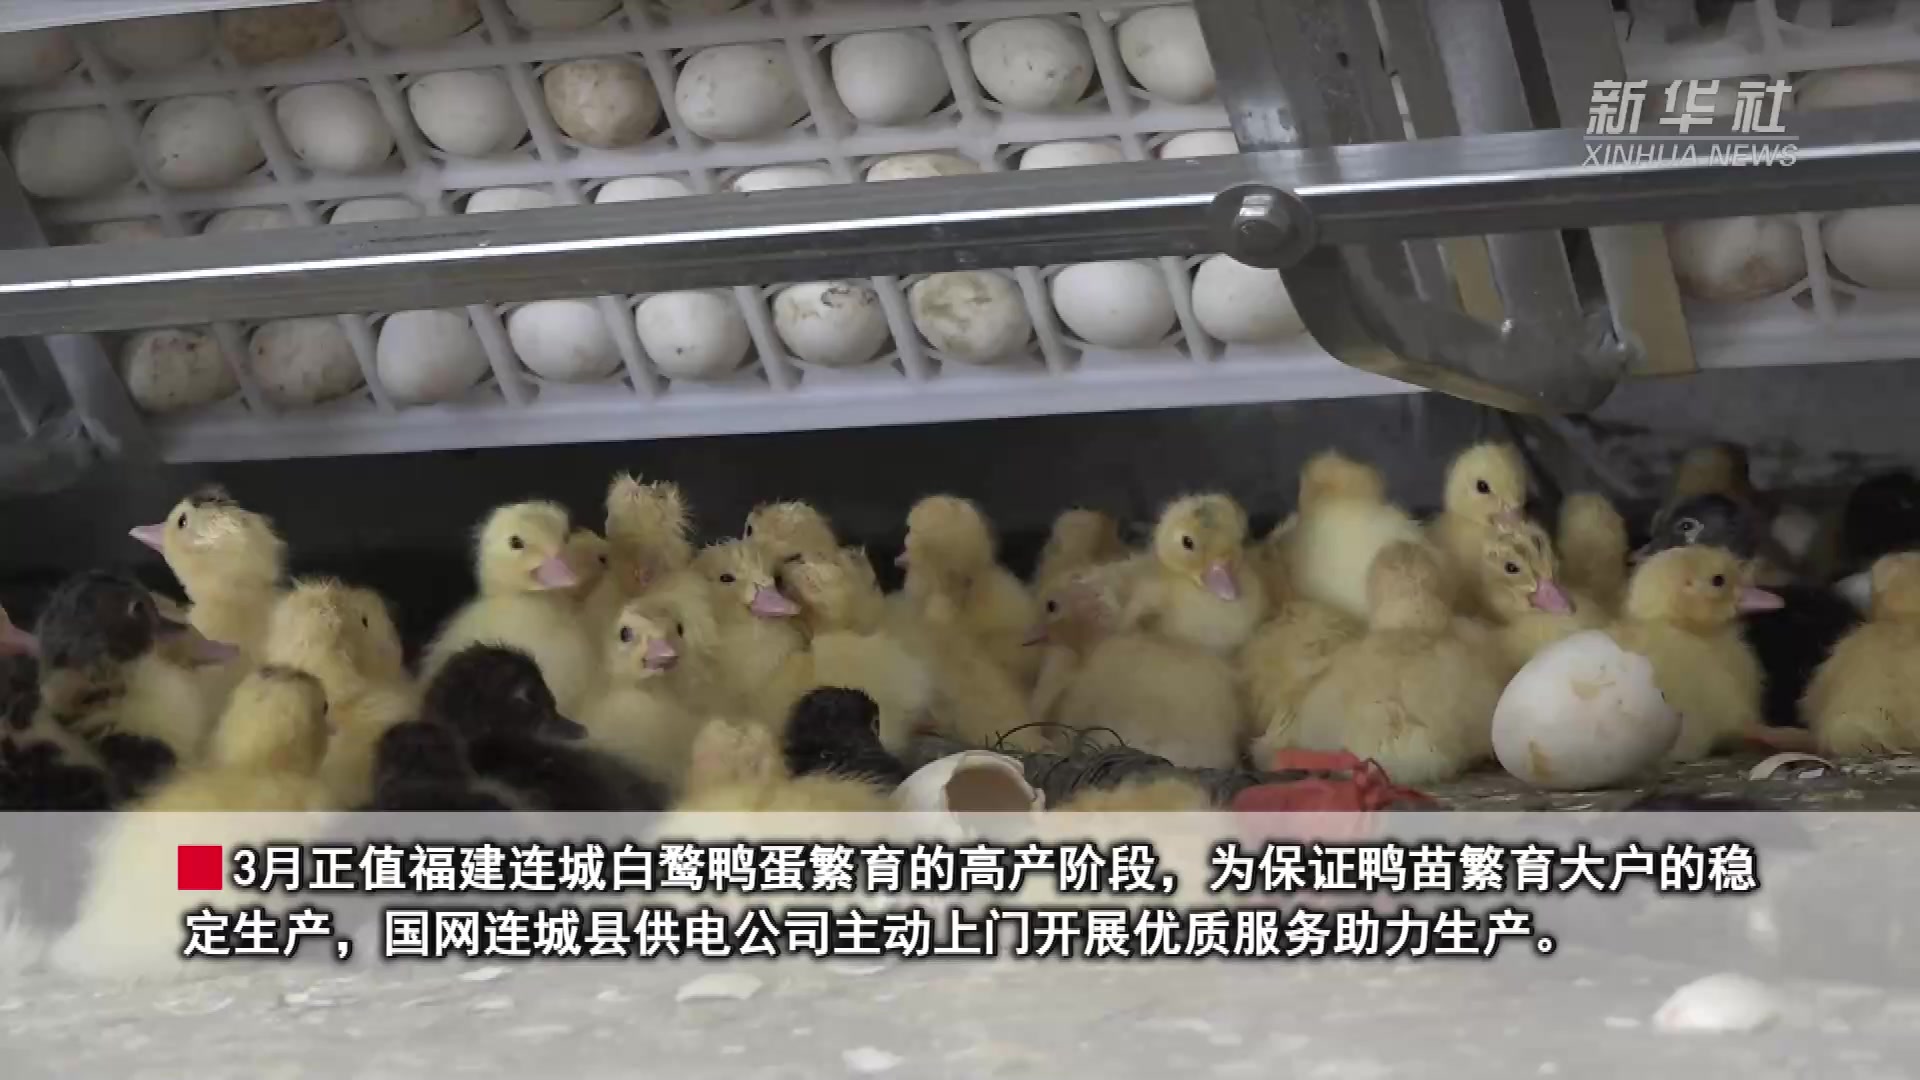 南京科星-笼养蛋鸭成套设备-南京科星饲养设备研制有限责任公司